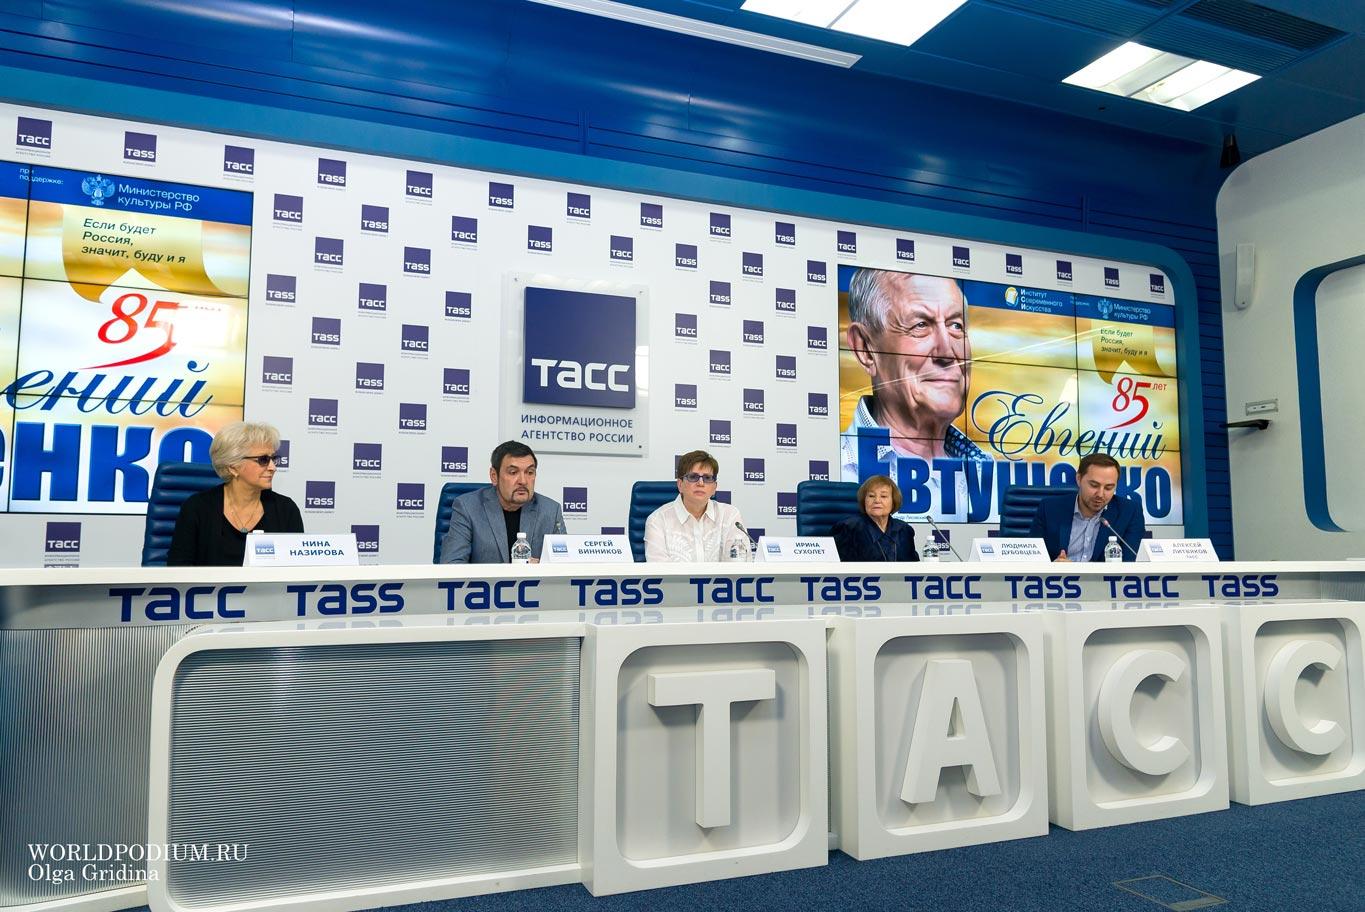 ИСИ принял участие в пресс-конференции ТАСС посвященной юбилею Евгения Евтушенко